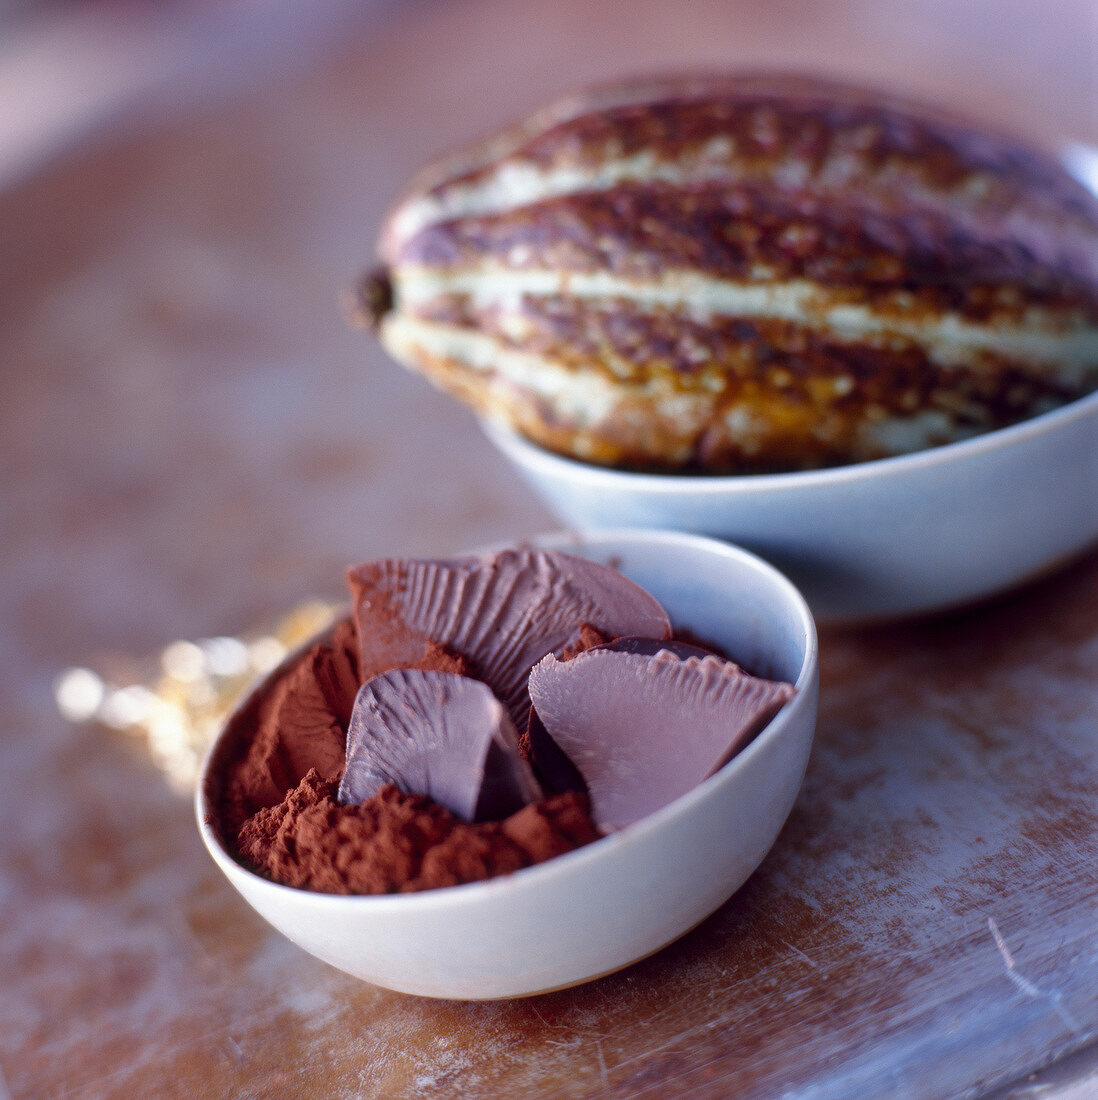 Kakaopulver mit Schokolade in einem Schälchen, dahinter Kakaofrucht